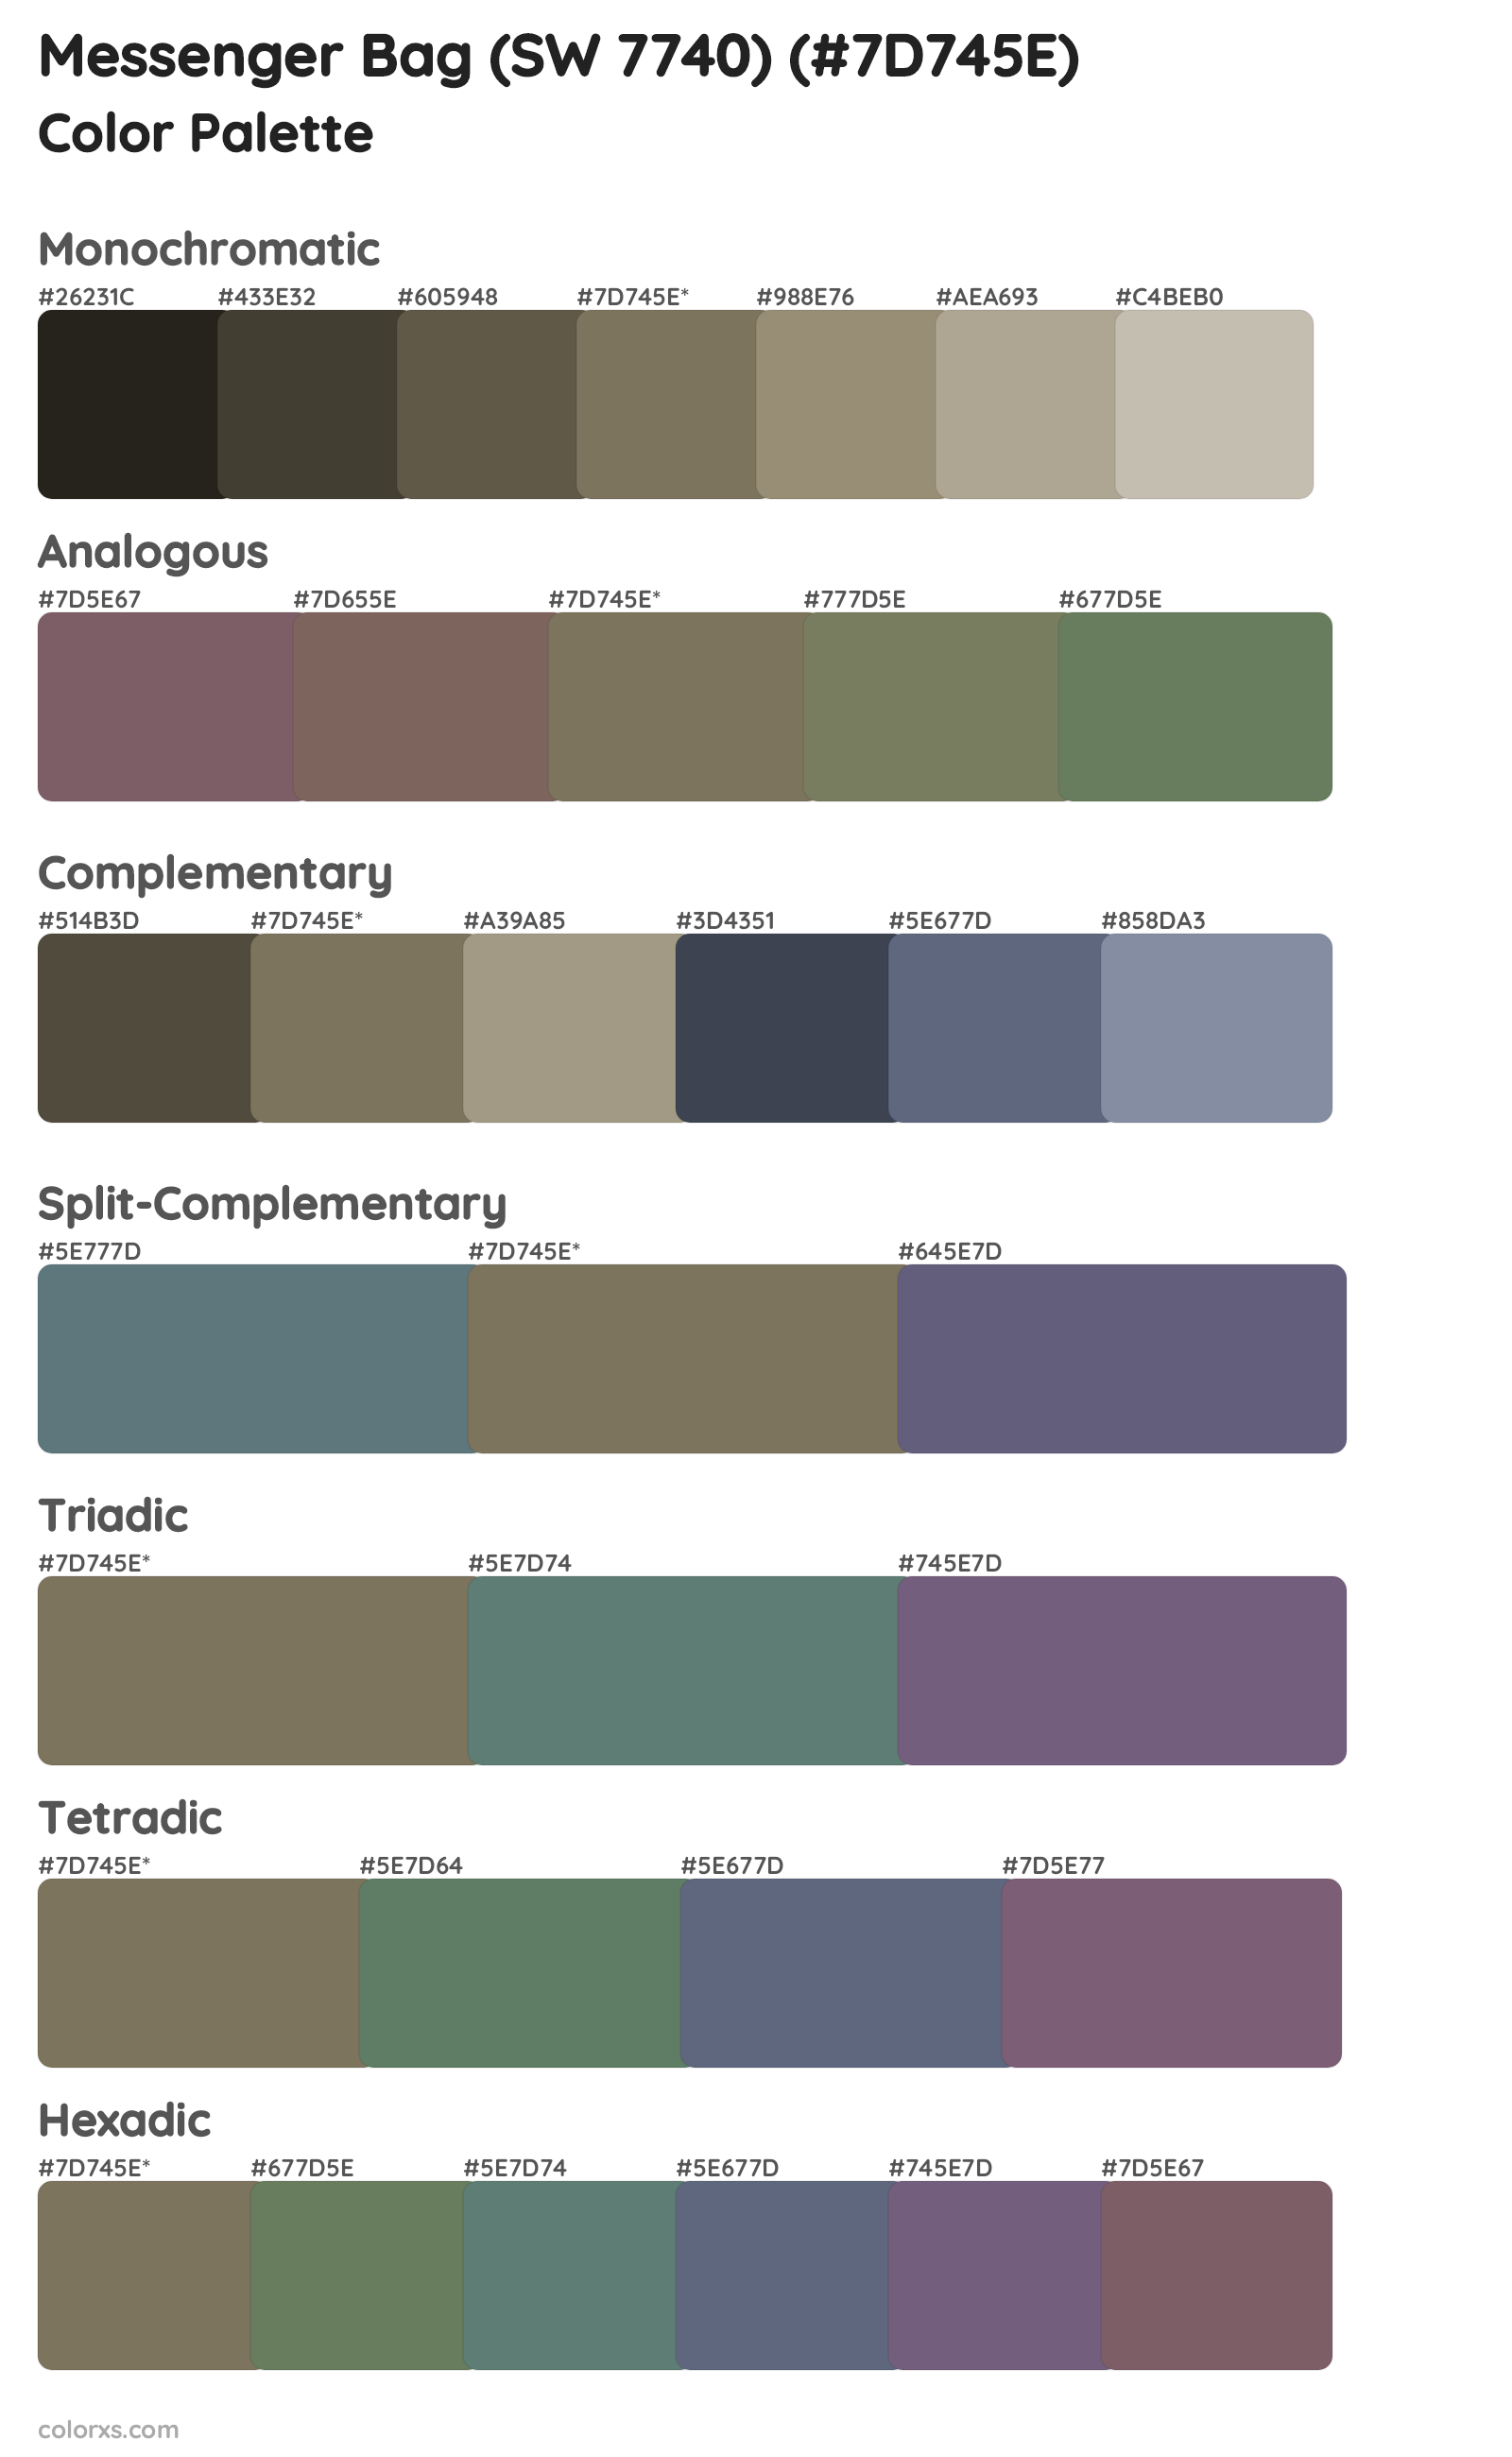 Messenger Bag (SW 7740) Color Scheme Palettes